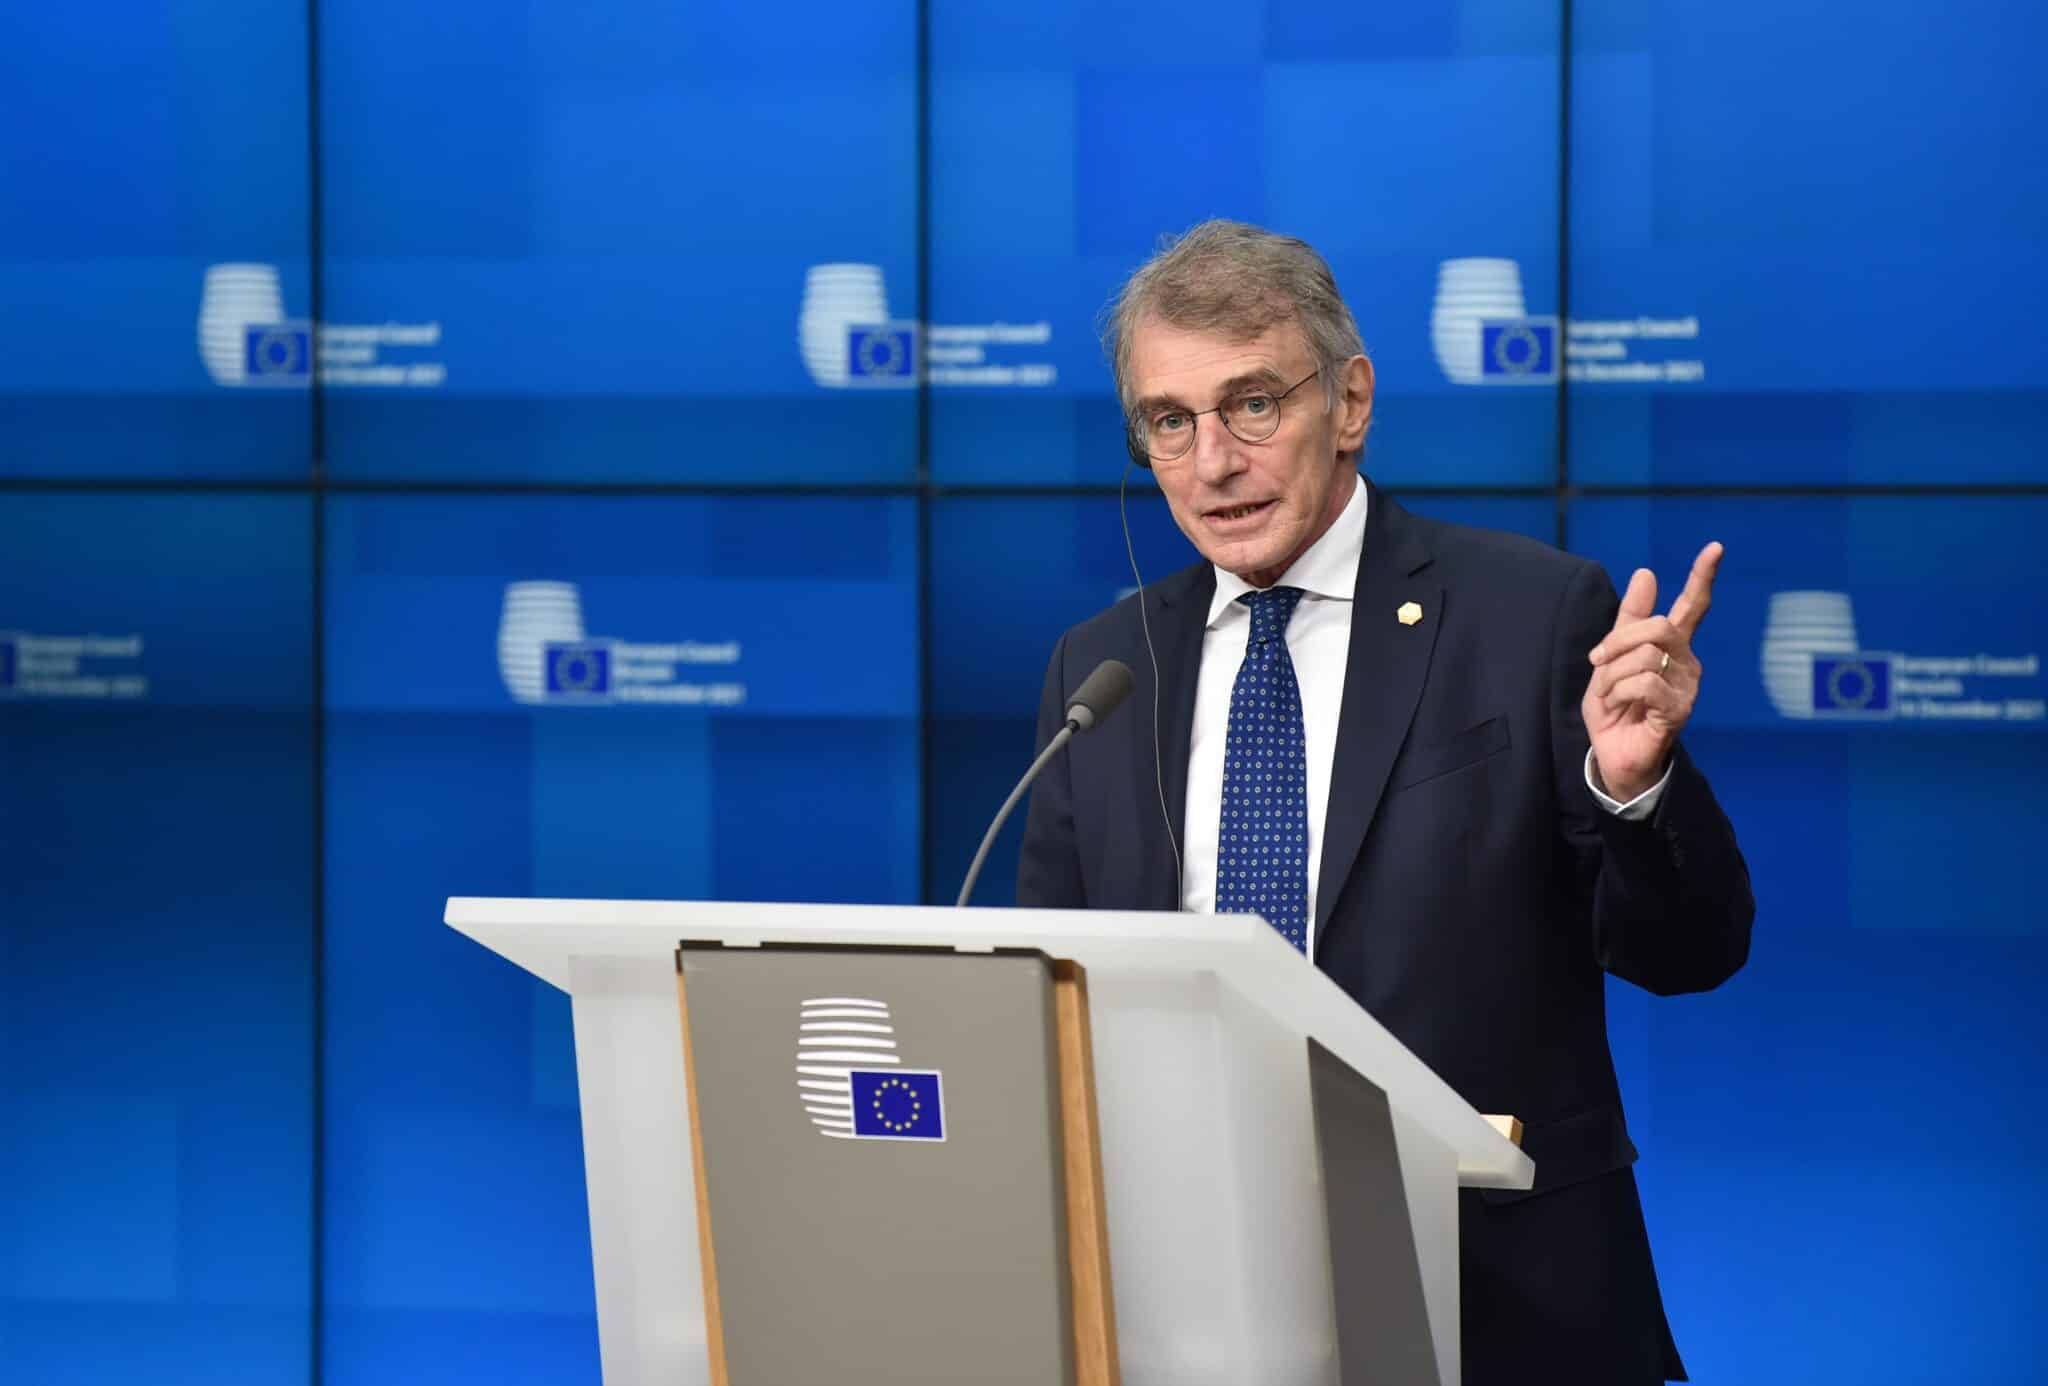 Fallece el presidente del Parlamento Europeo, David Sassoli